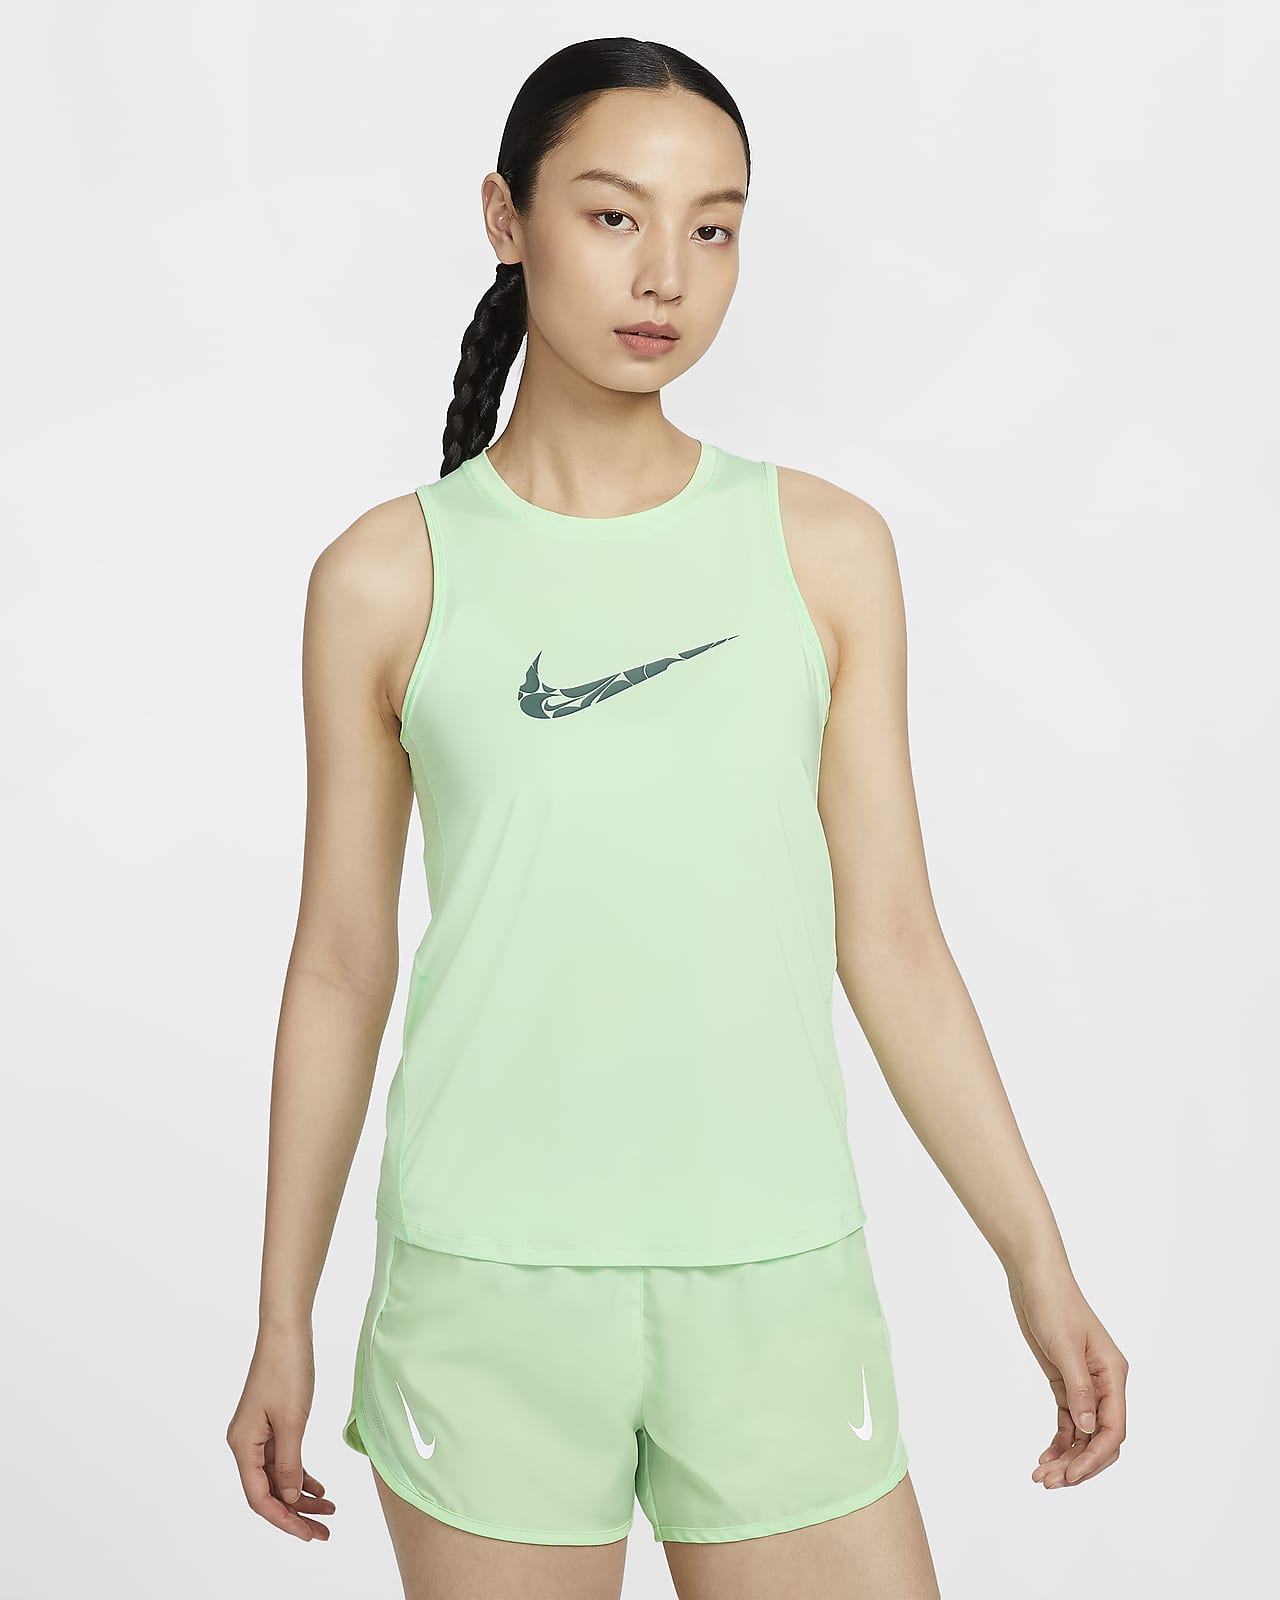 Nike One Women's Graphic Running Tank Top